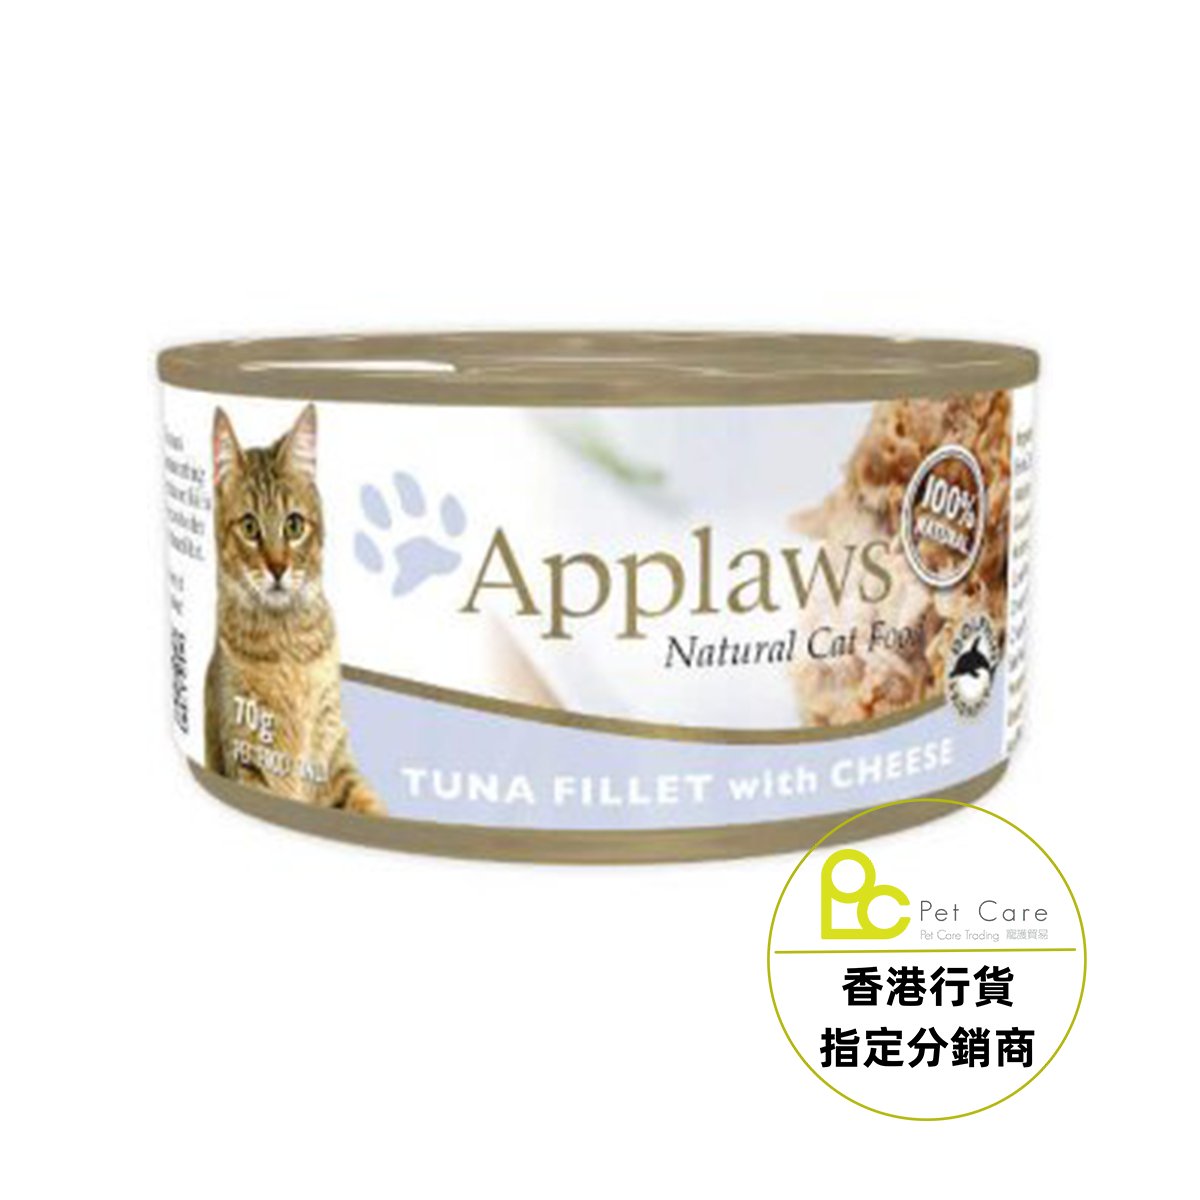 Applaws 全天然 貓罐頭 - 吞拿魚芝士 70g (細)